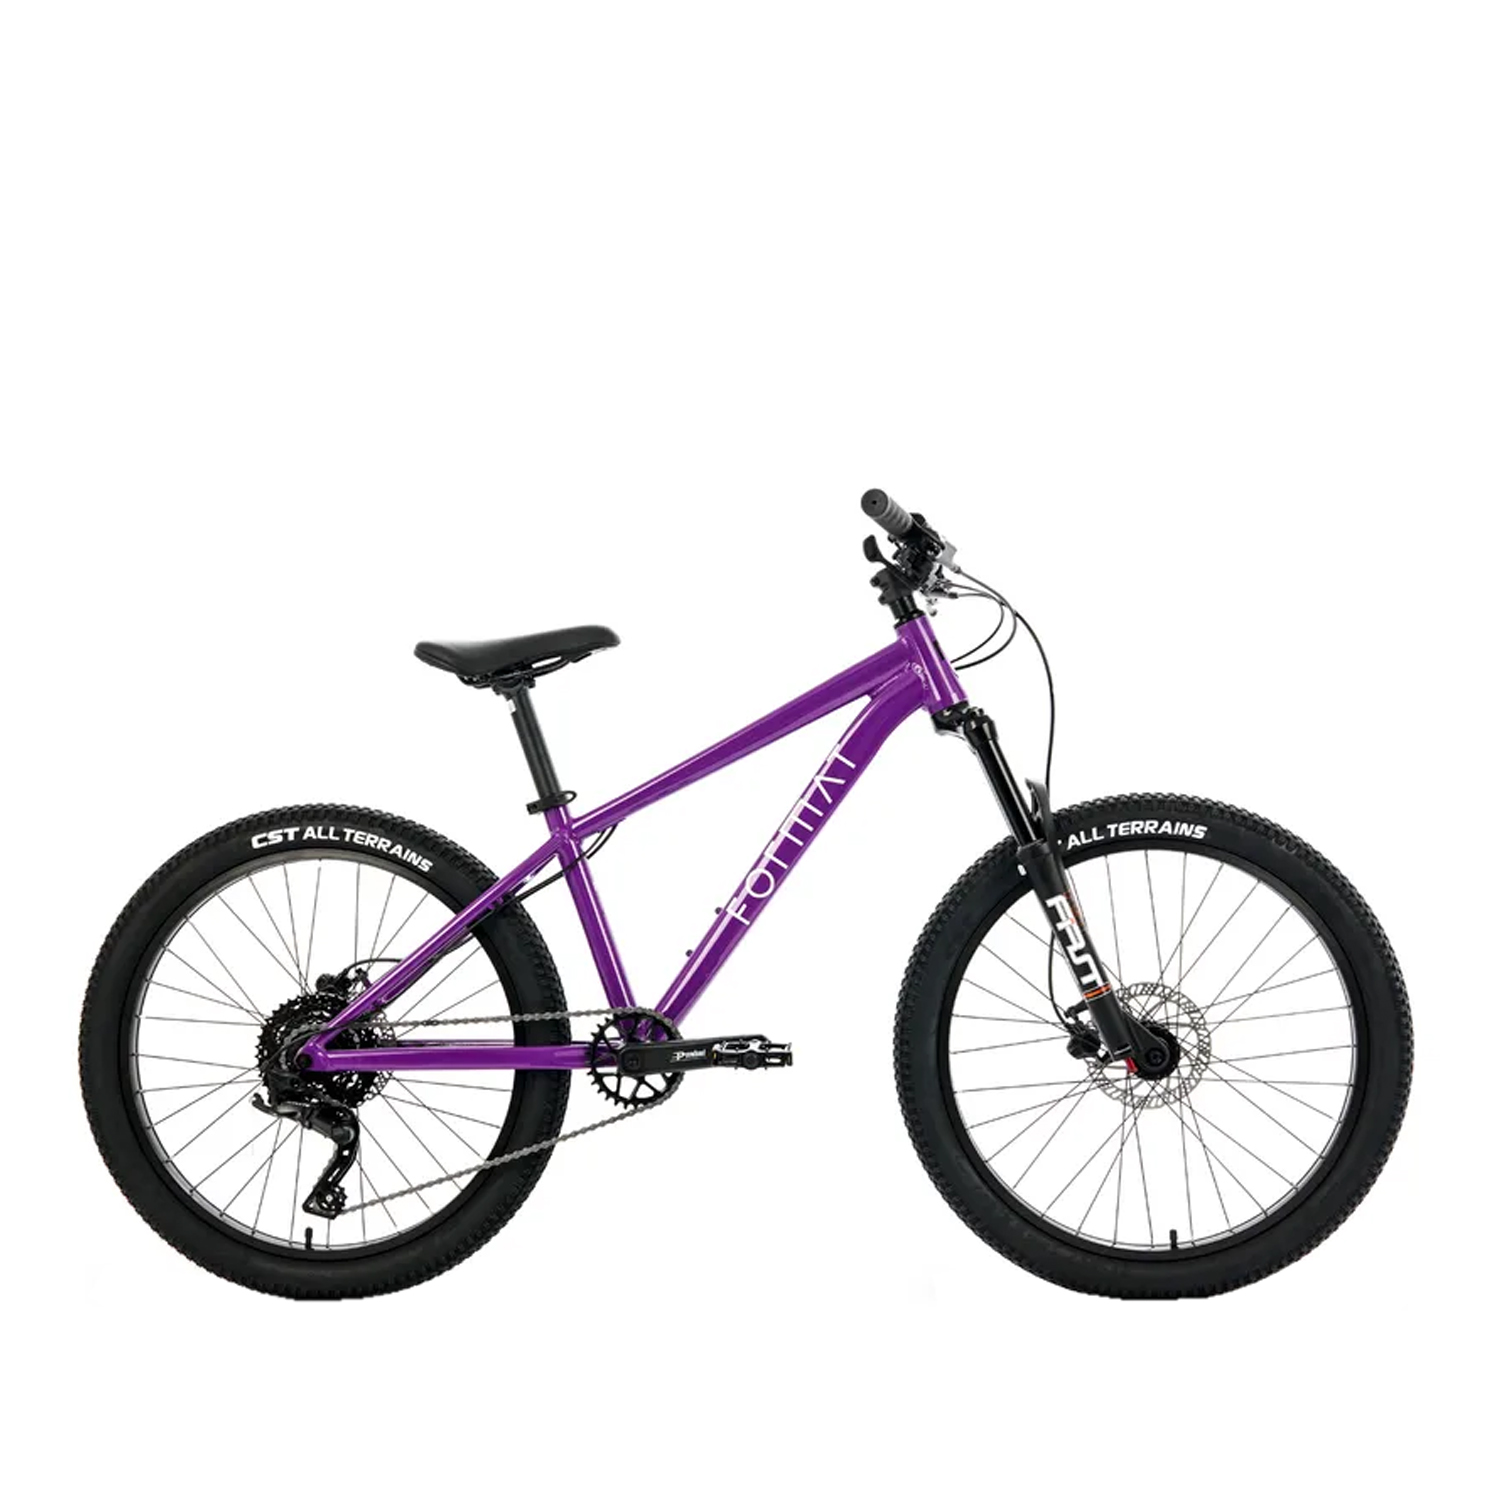 Велосипед Format 6612 24 2022 фиолетовый